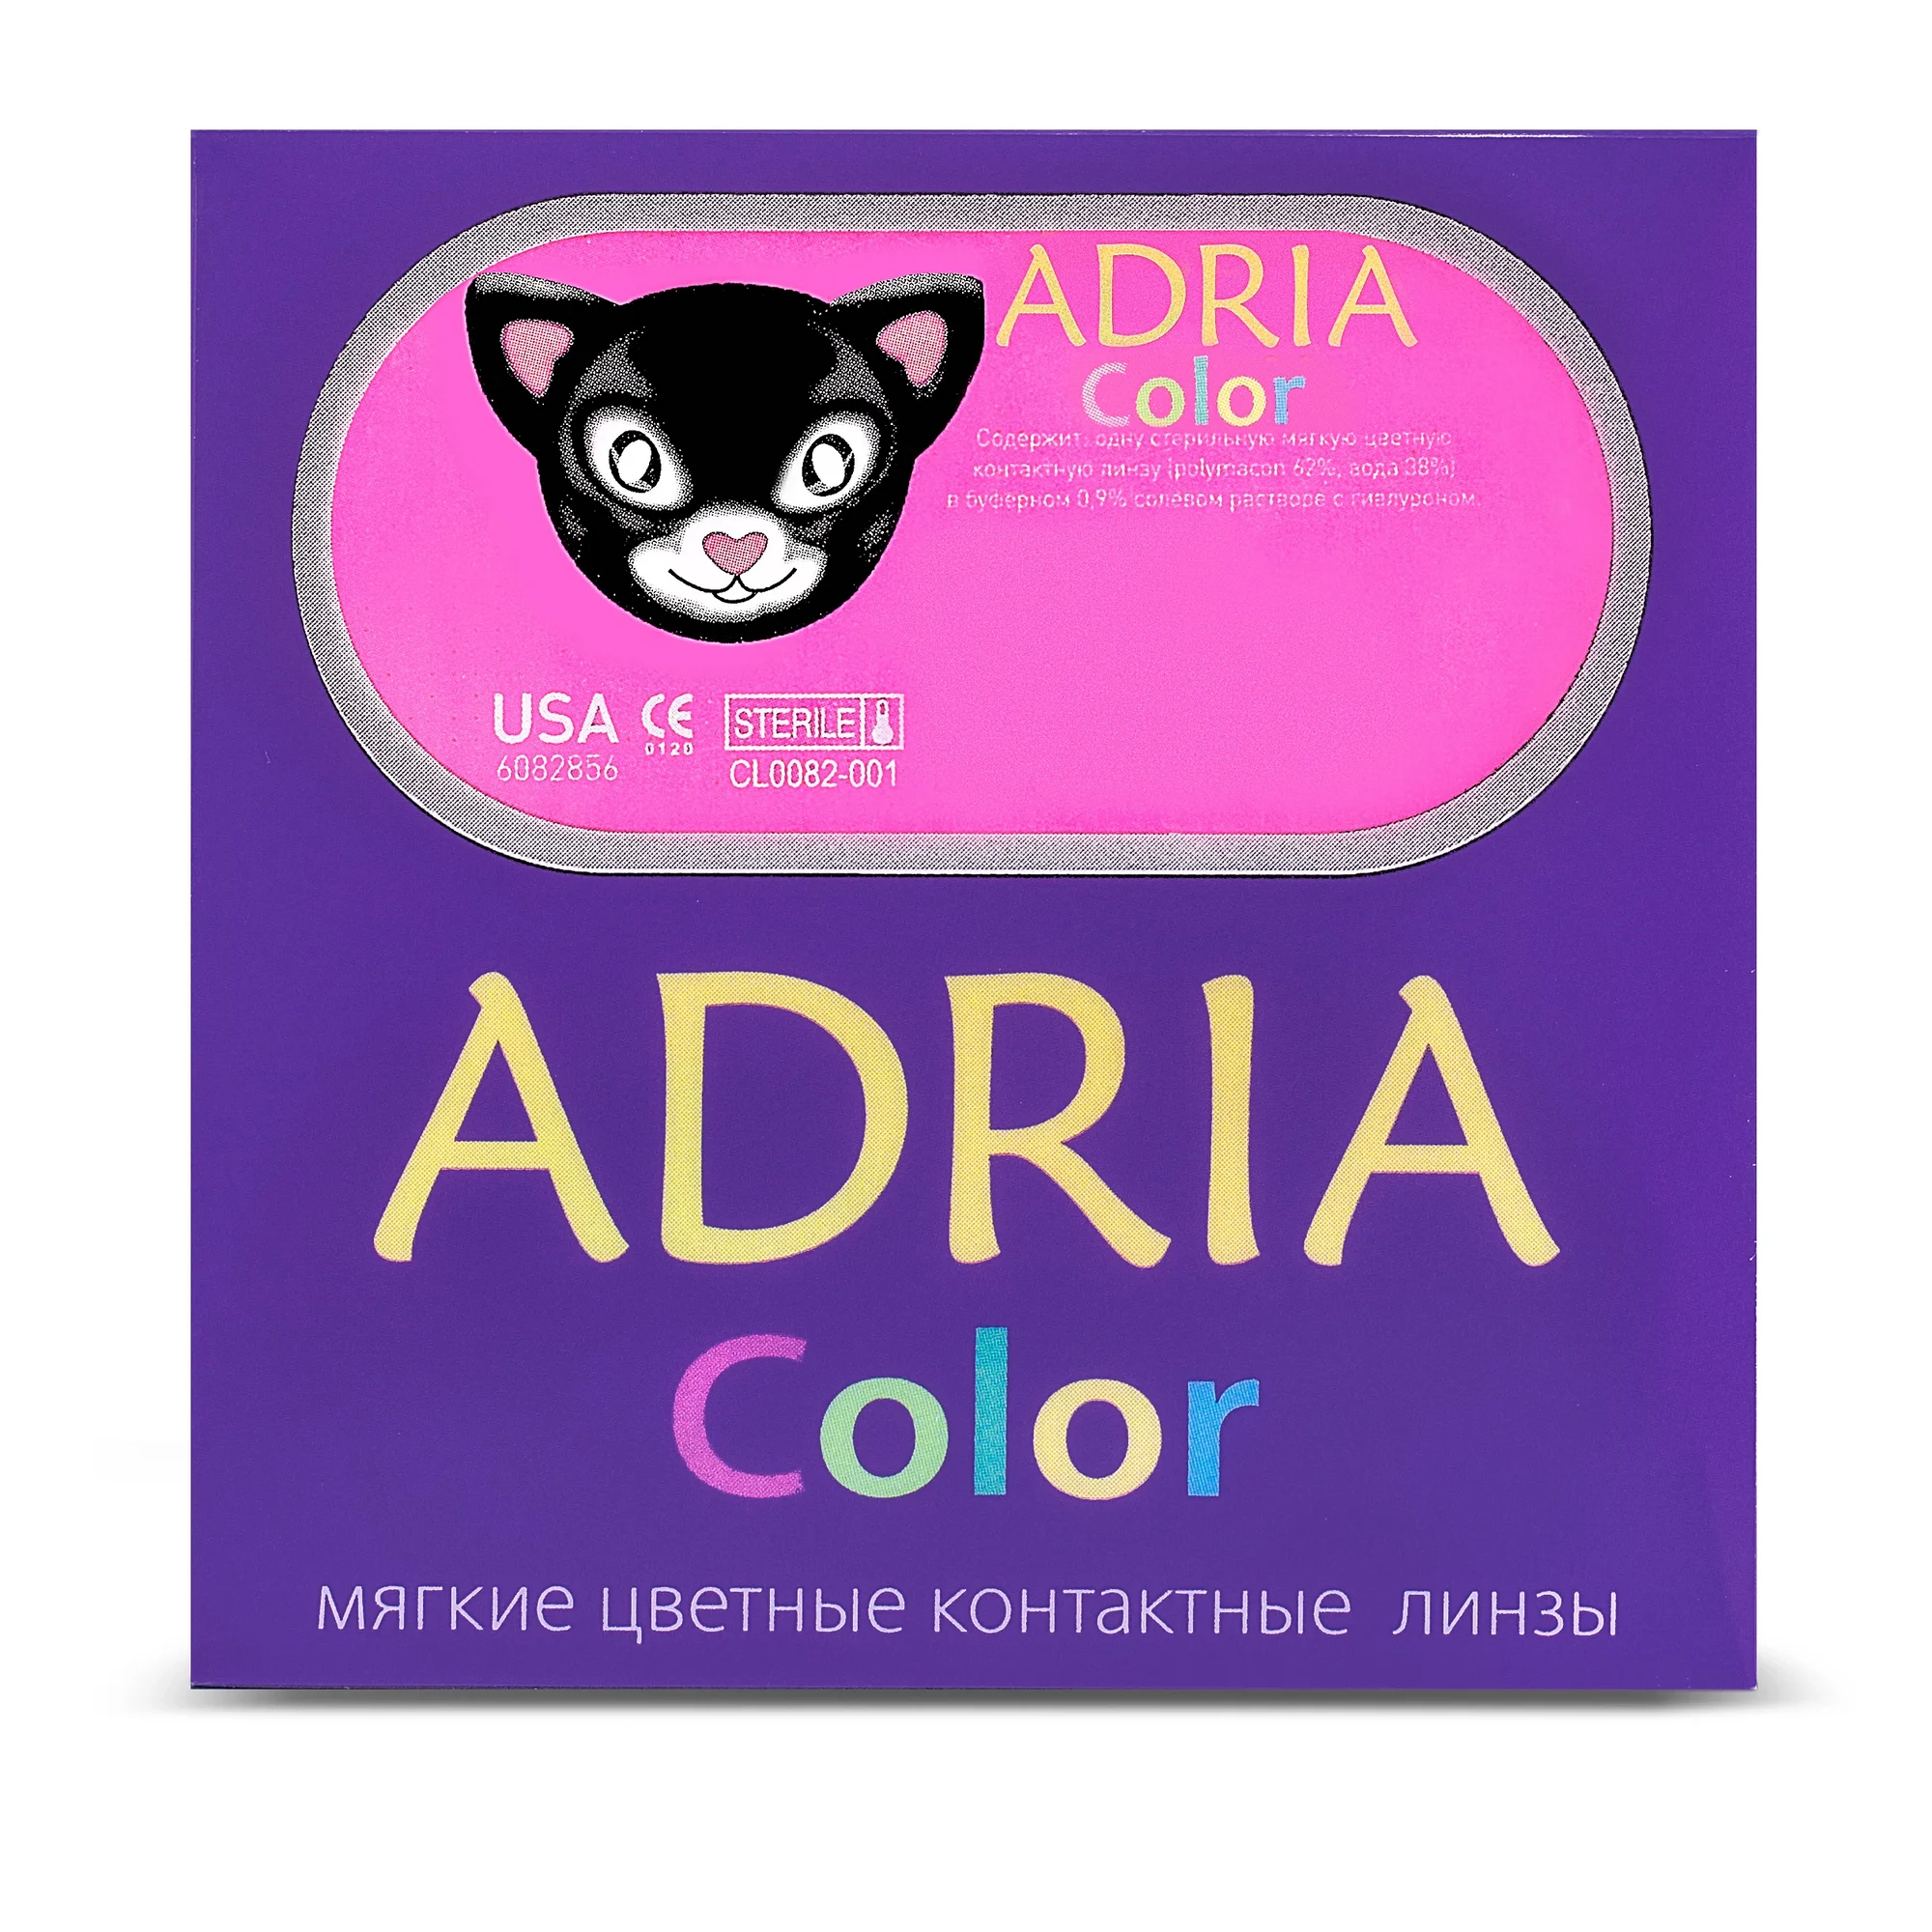 COLOR BOX ADRIA Color 3 Tone Pure Hazel (светло-карий)